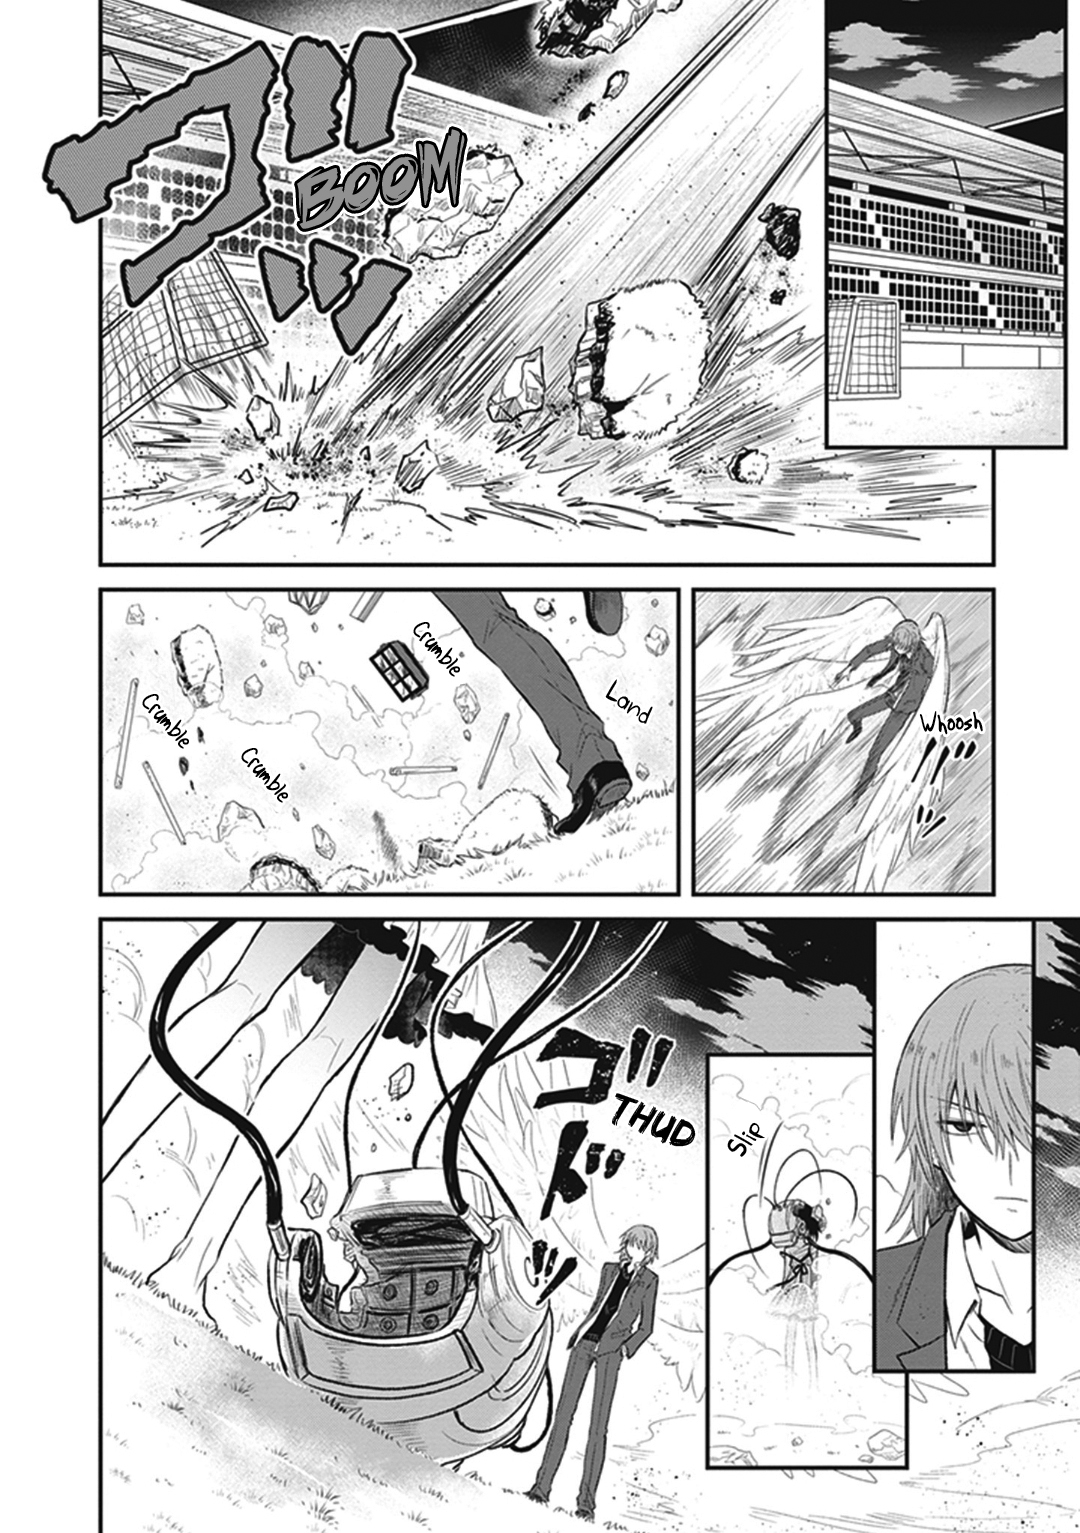 Toaru Majutsu no Index Gaiden: Toaru Kagaku no Dark Matter Vol. 1 Ch. 4